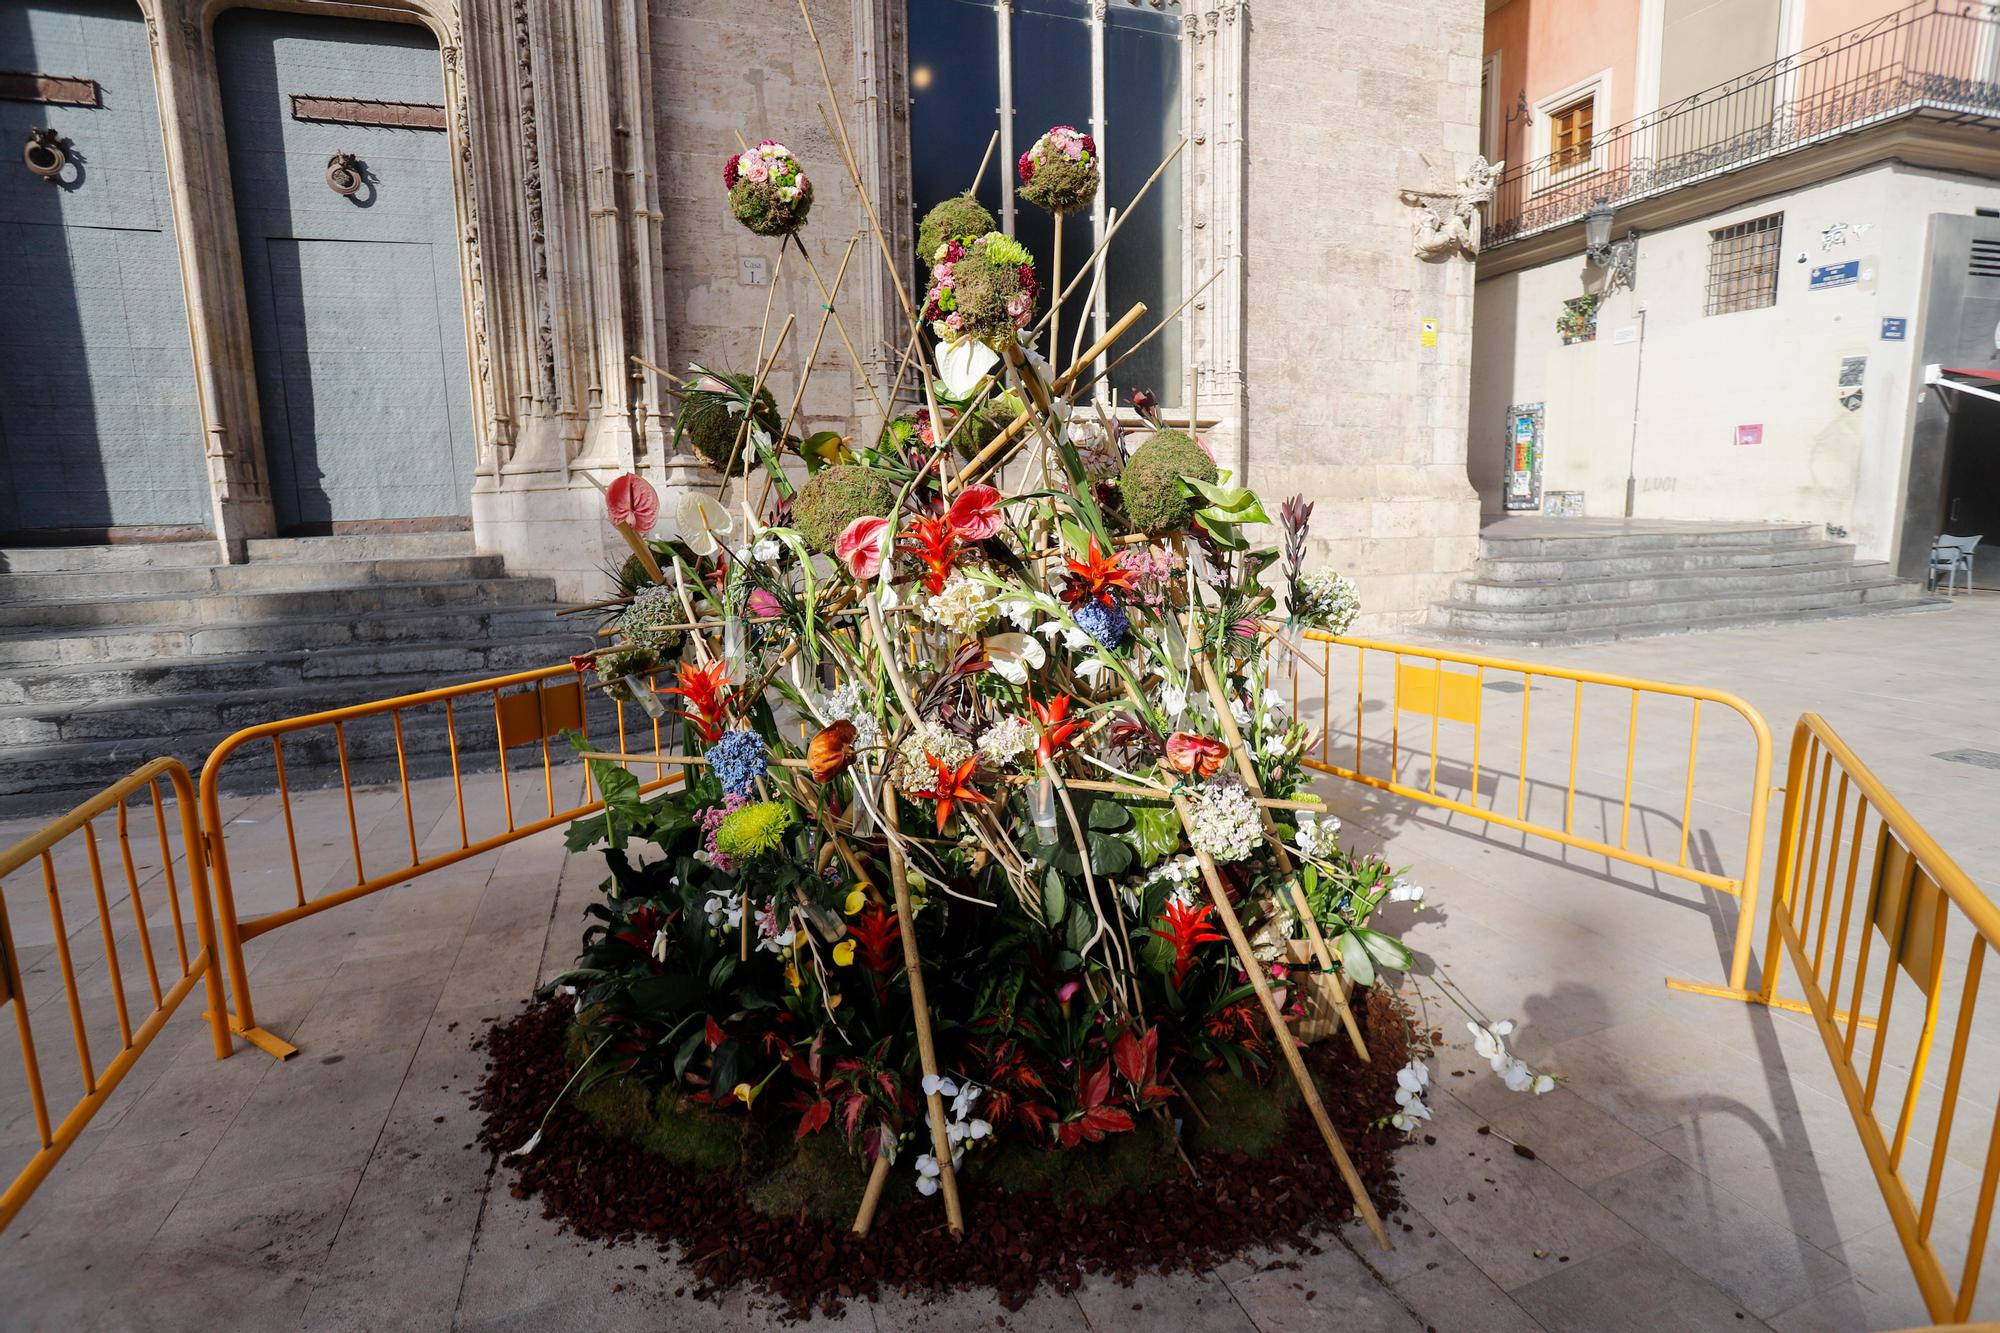 Sábado de Corpus: ambiente en la plaza, balcones y adornos florales